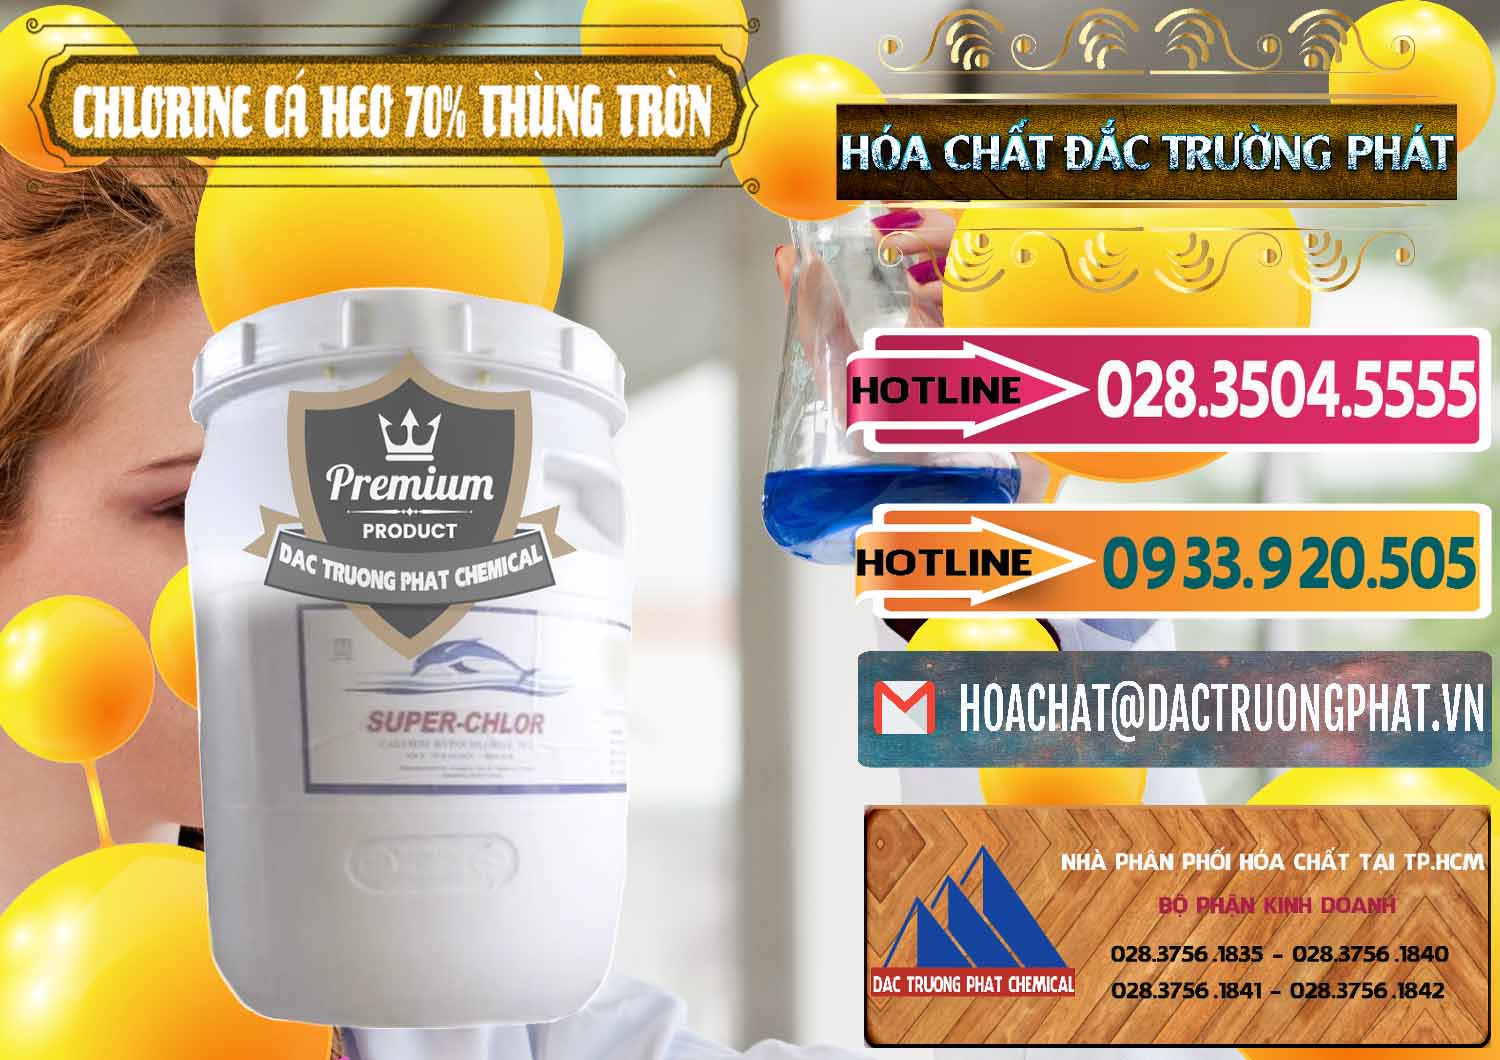 Nhà cung cấp & bán Clorin - Chlorine Cá Heo 70% Super Chlor Thùng Tròn Nắp Trắng Trung Quốc China - 0239 - Cty chuyên bán & cung cấp hóa chất tại TP.HCM - dactruongphat.vn